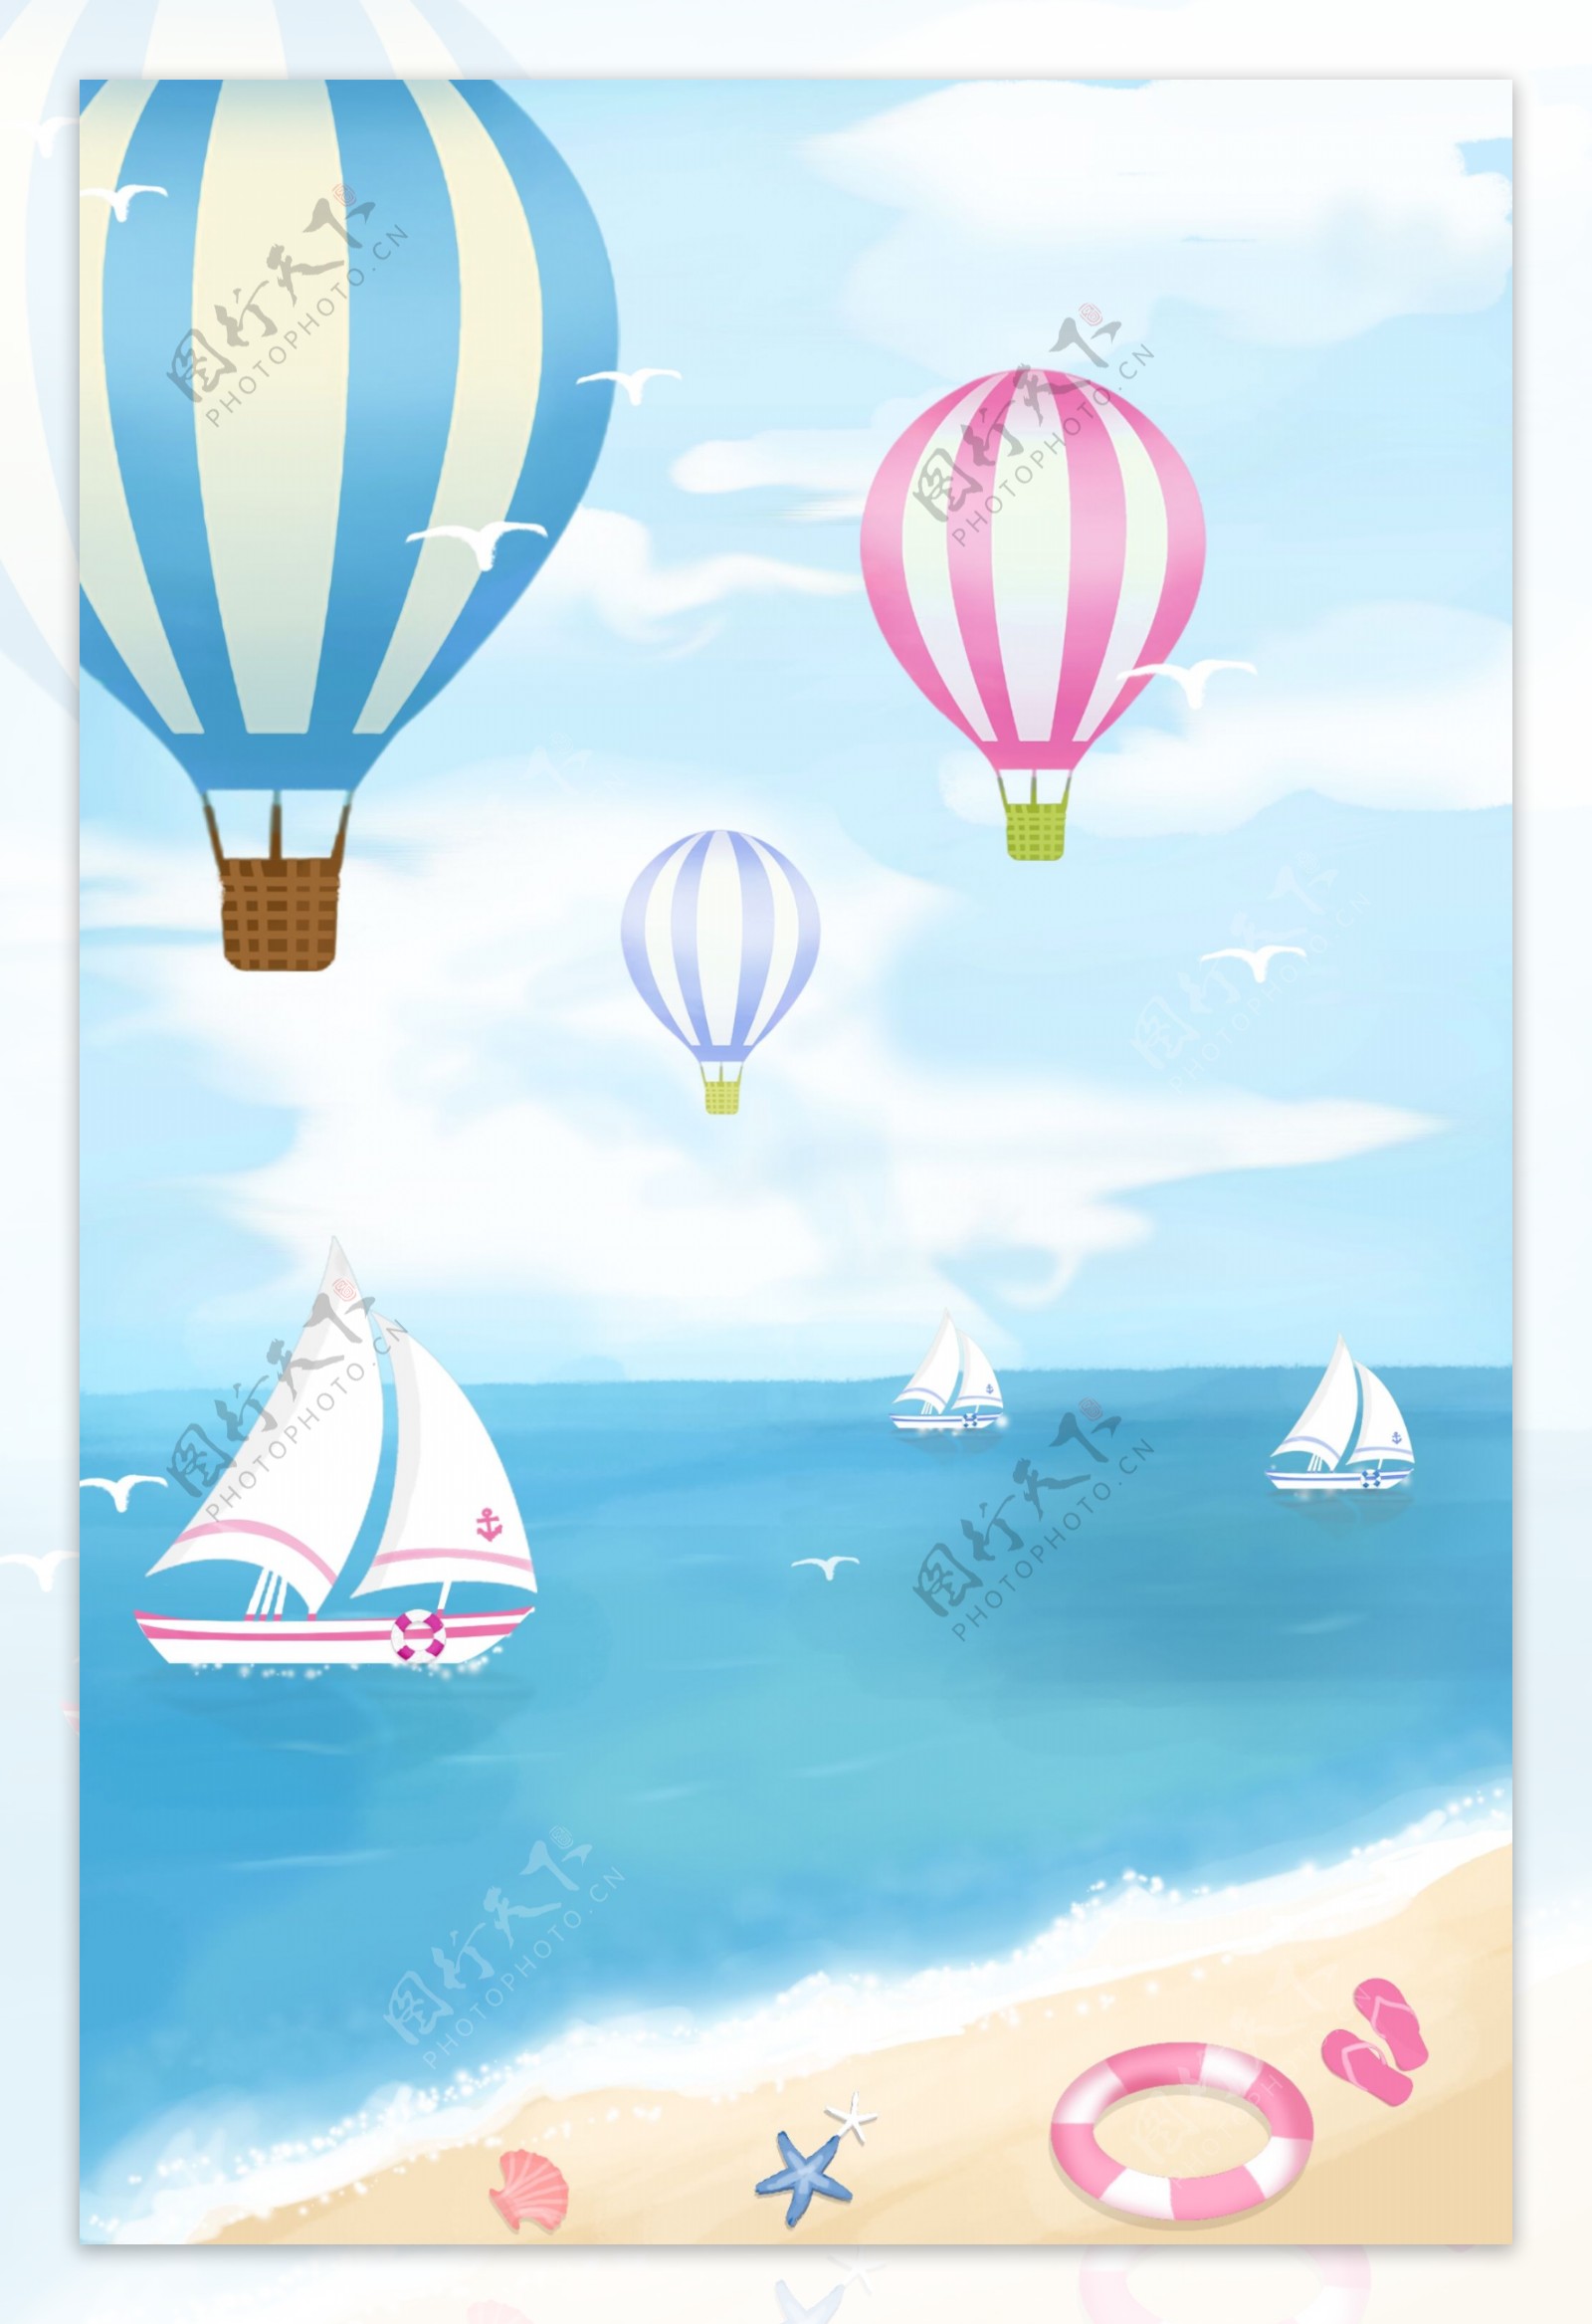 海边沙滩热气球清新插画背景